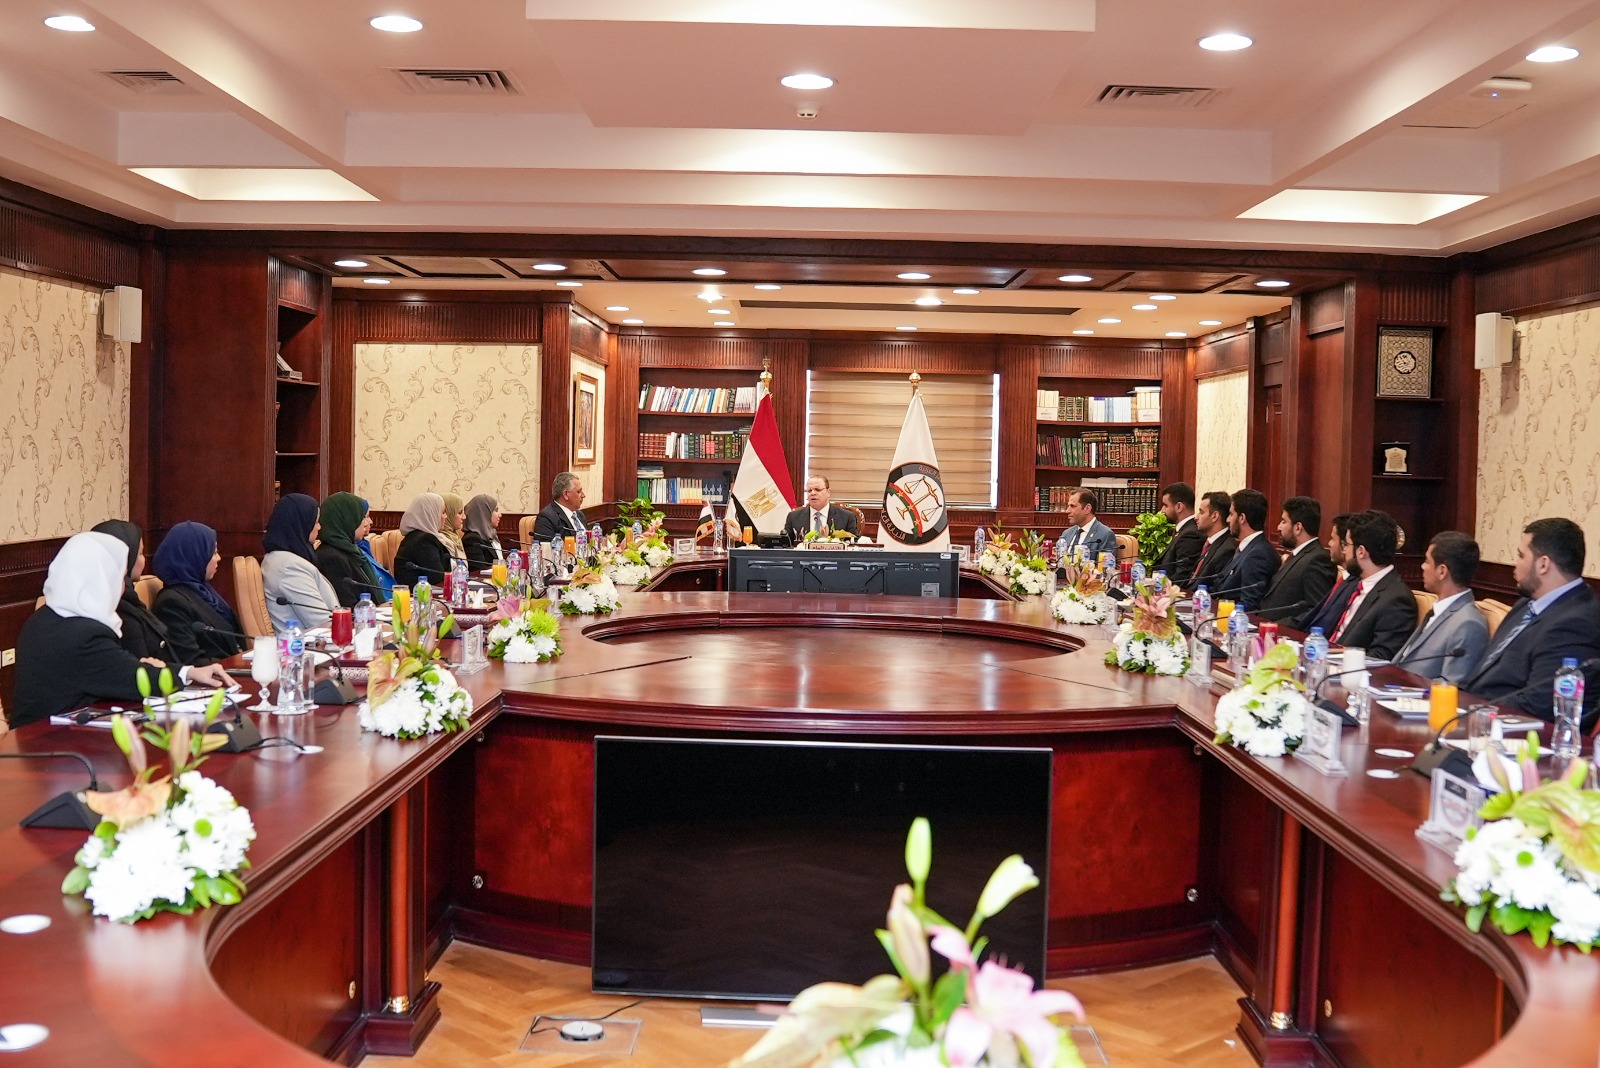 النائبُ العامُّ يلتقي بوفدٍ رفيعِ المستوى من أعضاءِ هيئةِ الادعاءِ بسلطنةِ عمانَ 3